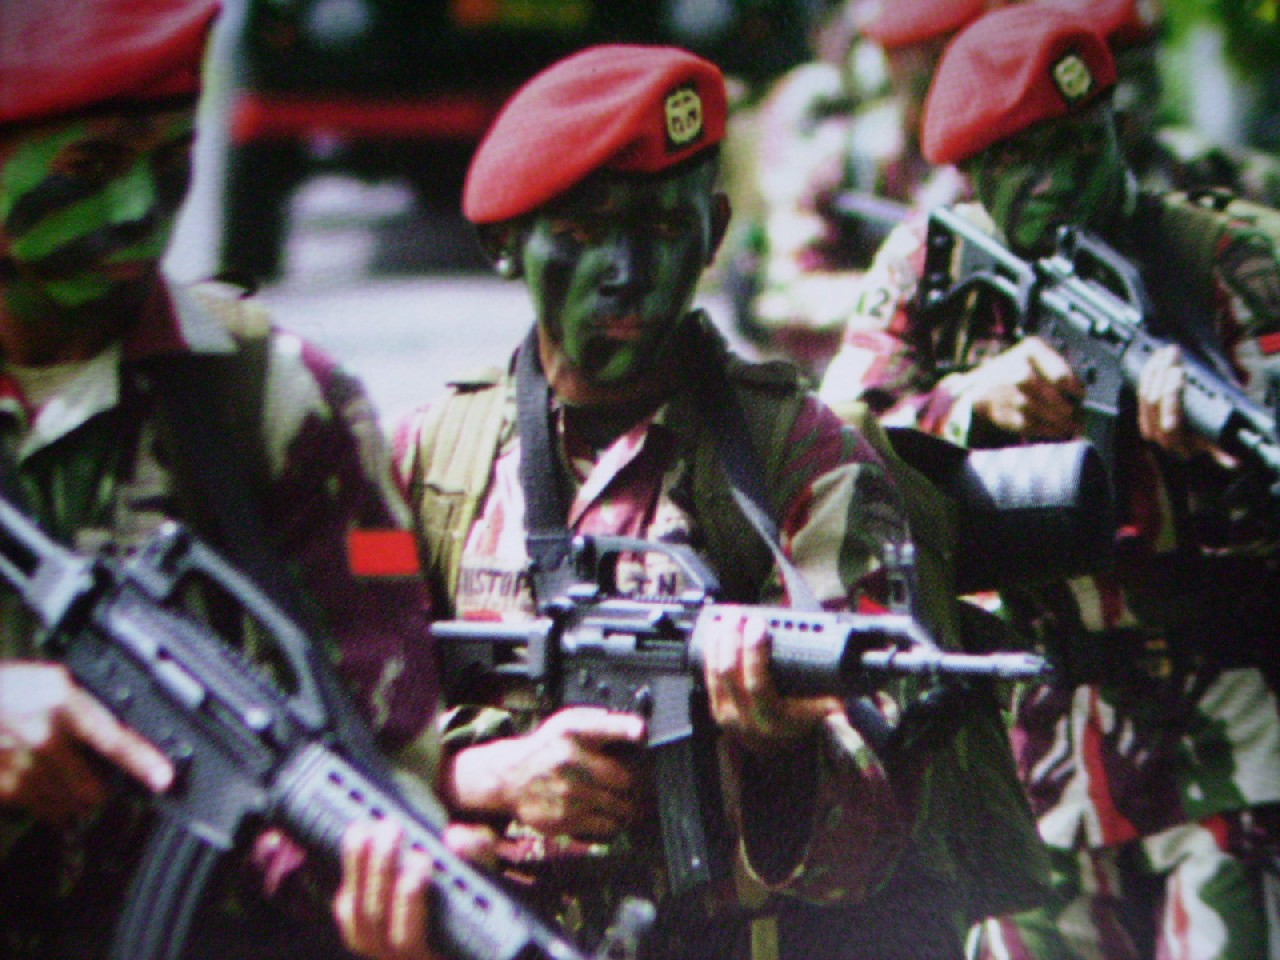 Yuk Mengintip Pasukan Baret Merah KOPASSUS Kebanggaan INDONESIA